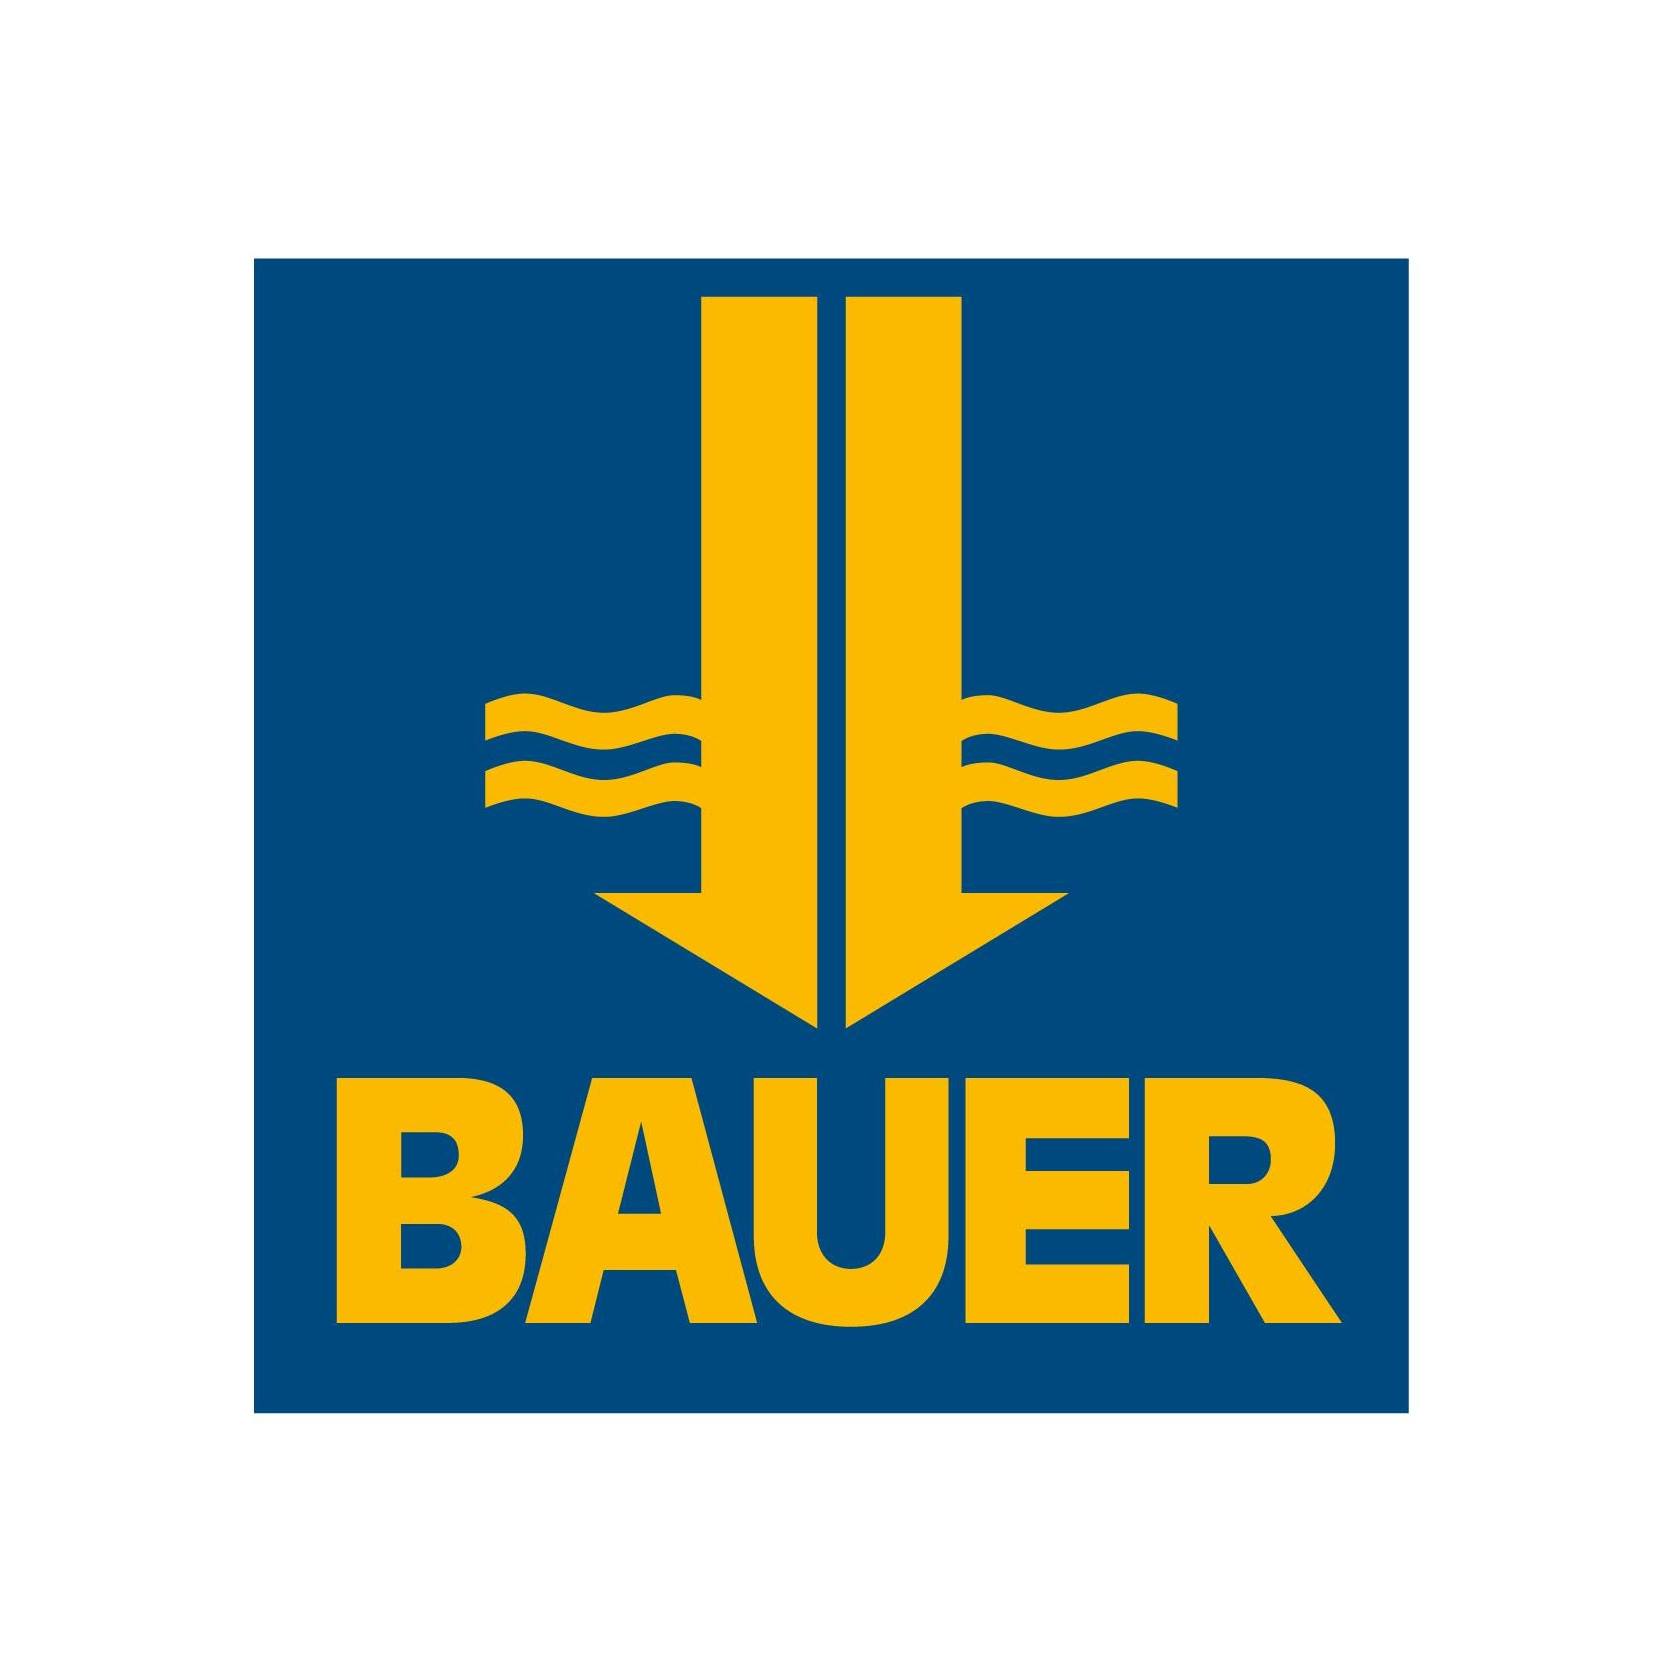 BAUER Spezialtiefbau GmbH